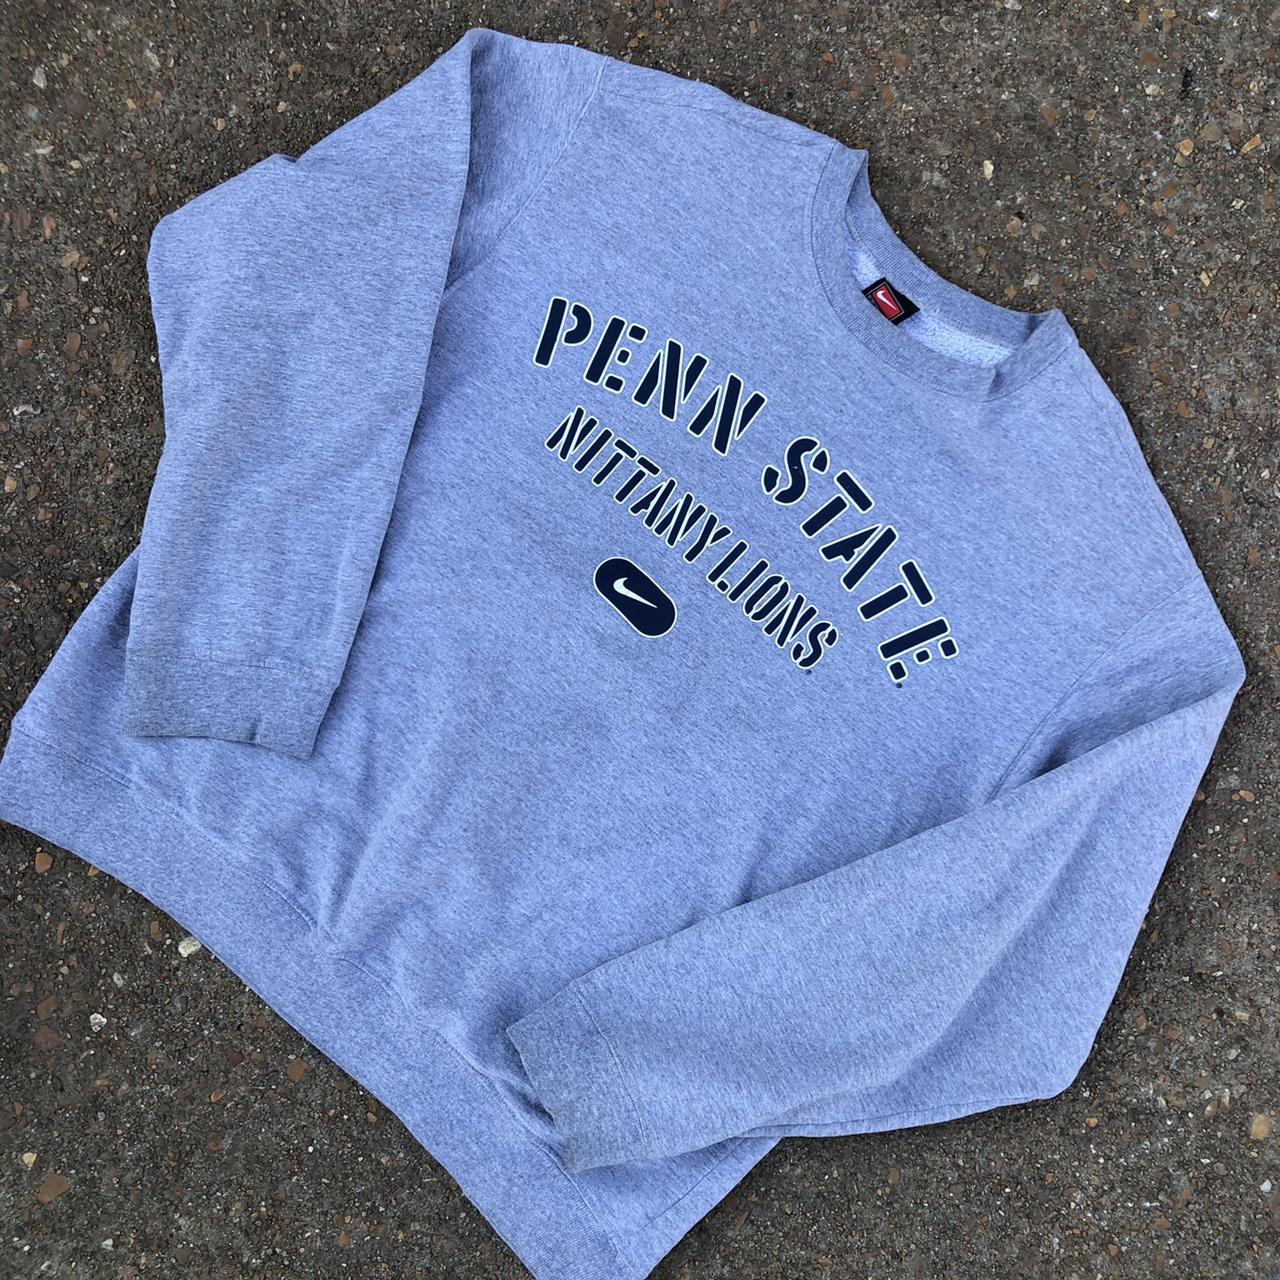 Vintage Penn State Nike crew neck sweatshirt. 90s,... - Depop